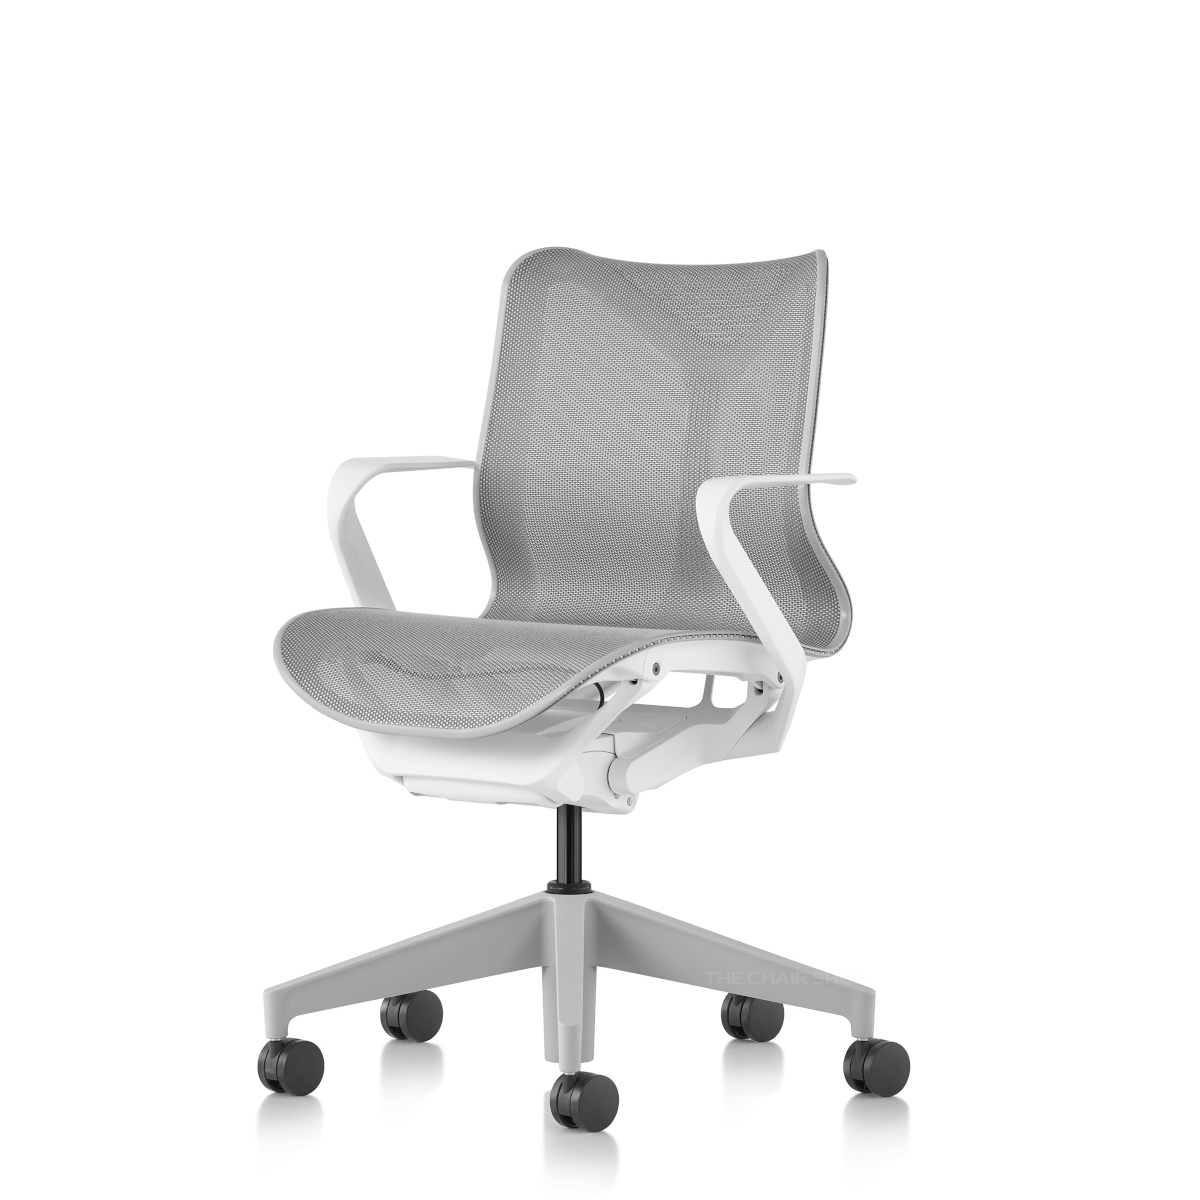 Cosm Chair コズムチェア スタジオホワイト ローバック/固定アーム/シートサスペンション:ミネラル